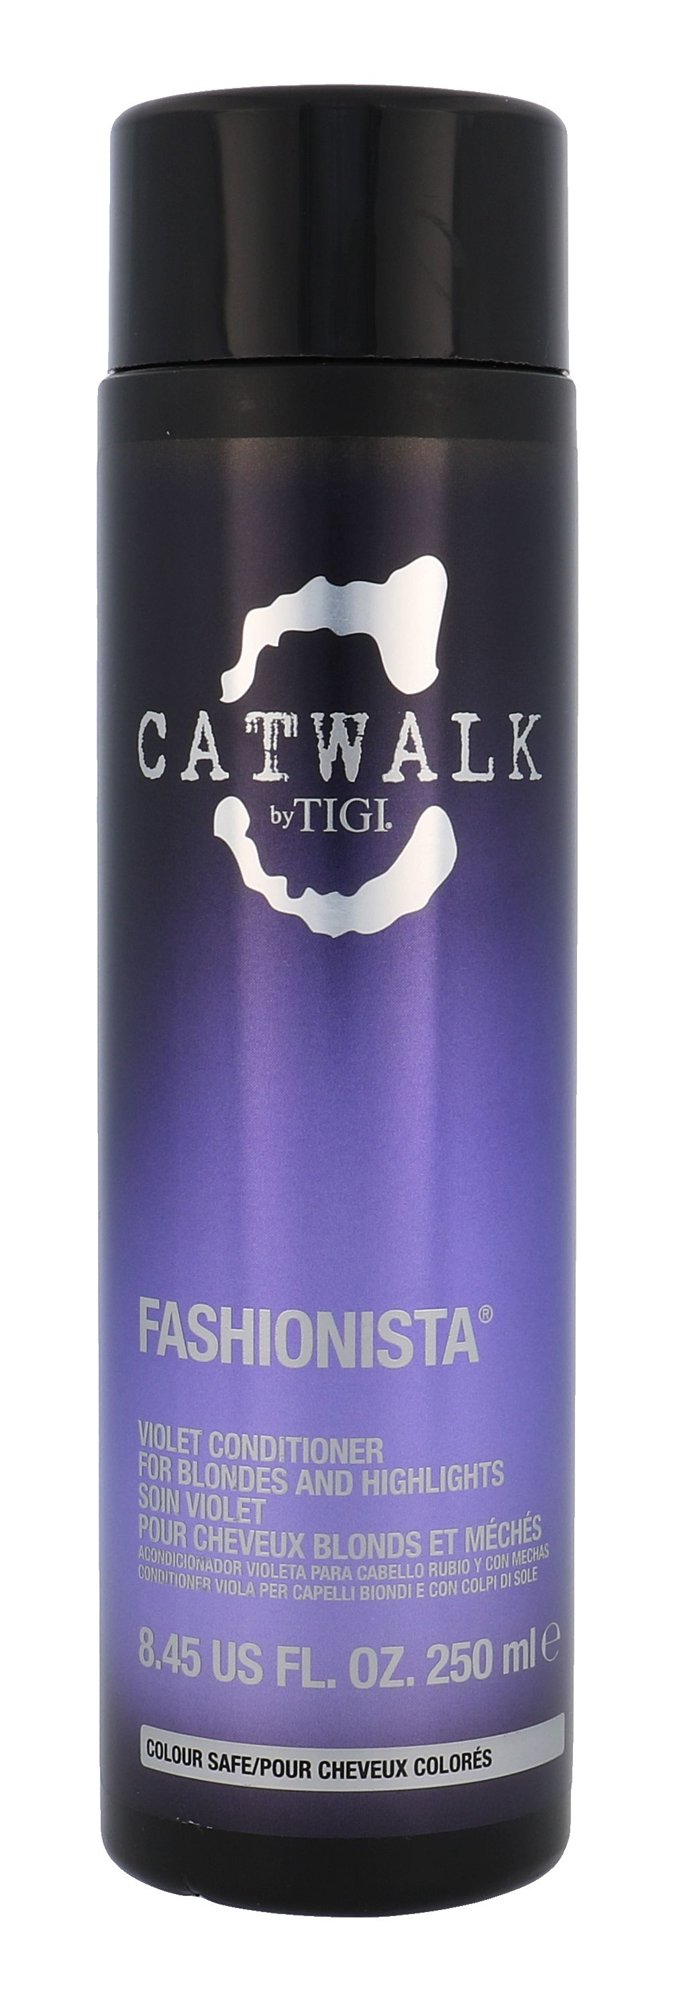 Tigi Catwalk Fashionista Violet 250ml kondicionierius